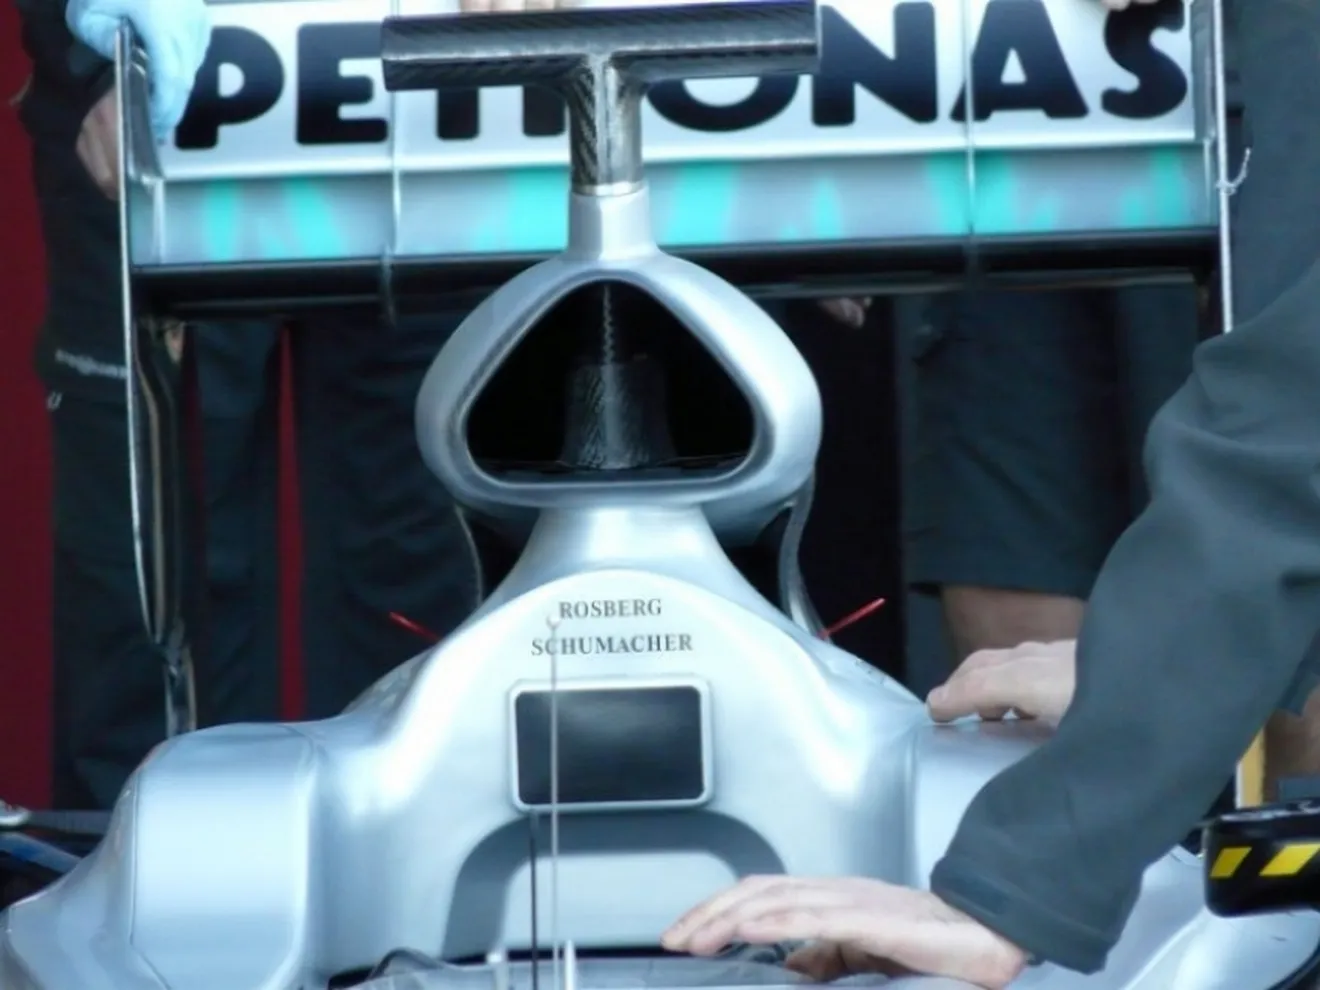 Presentado el monoplaza de Mercedes GP: El MGP W01